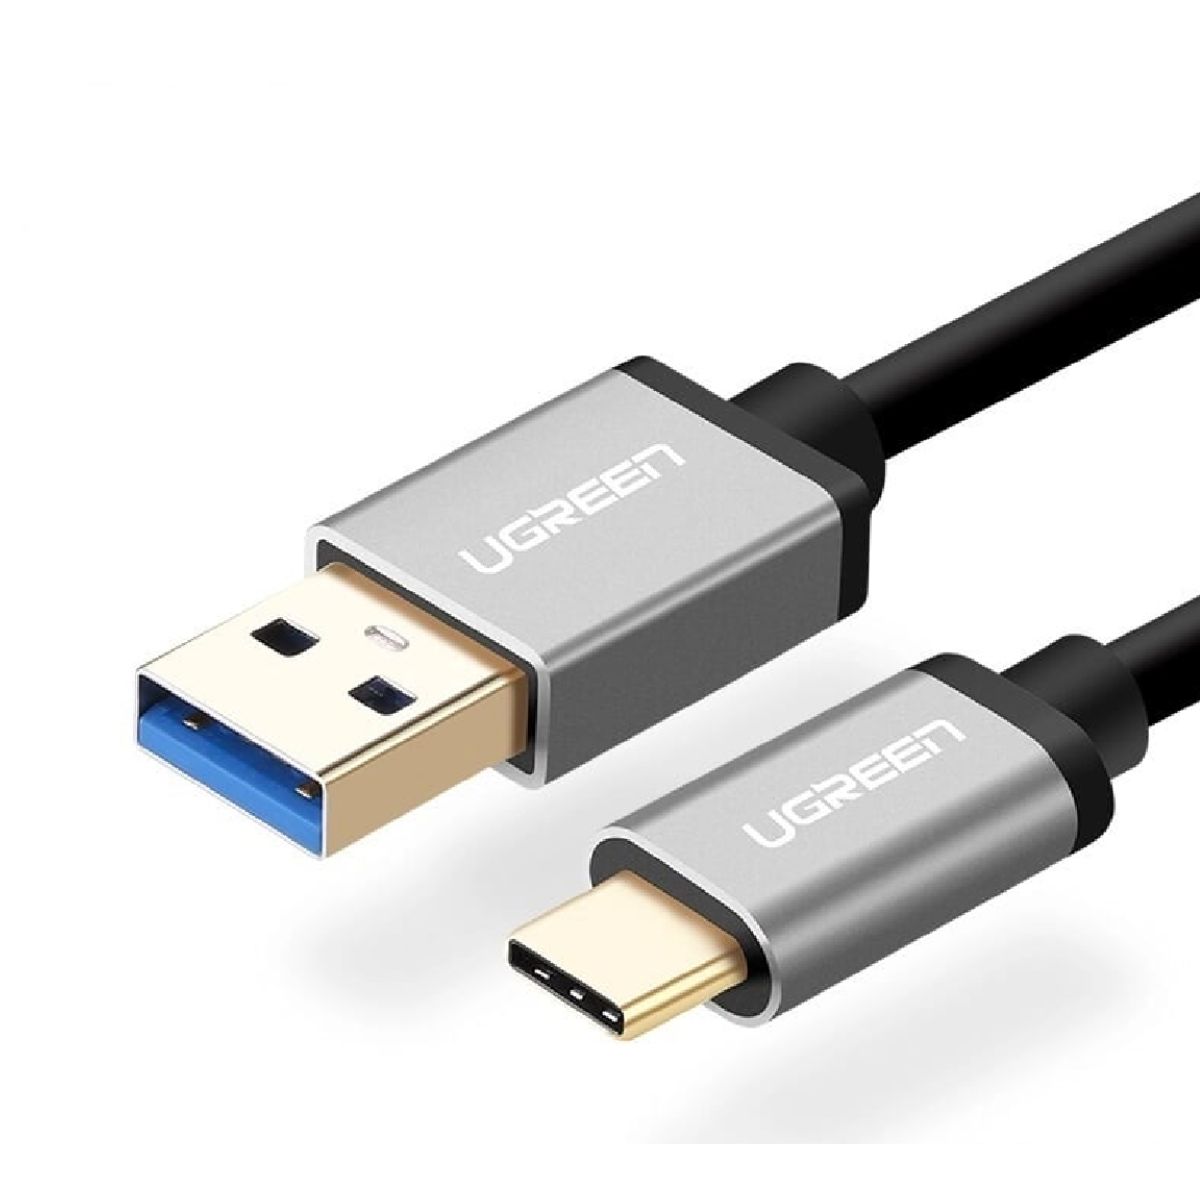 Cáp USB 3.0 sang USB type C Ugreen 20287 US187 chiều dài 1m, màu đen, tốc độ truyền tải 200MB/s